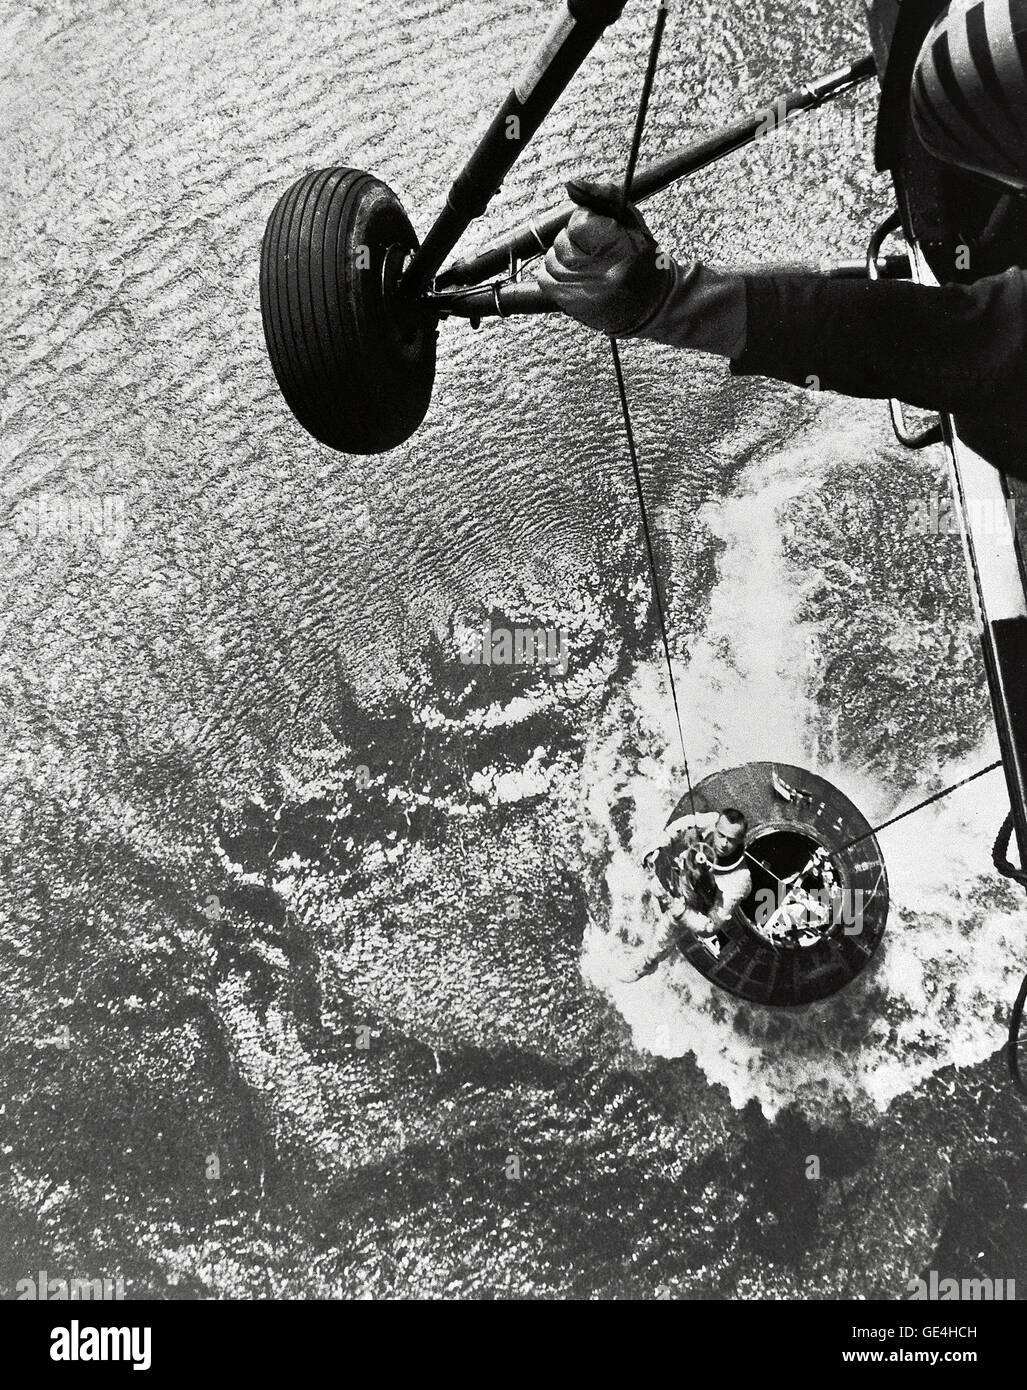 Un U.S. Elicottero Marine team di recupero di paranchi astronaut Alan Shepard dal suo veicolo spaziale di mercurio dopo un volo riuscito e splashdown nell'Oceano Atlantico. Il 5 maggio 1961, Alan B.Shepard Jr. divenne il primo americano a volare nello spazio. La sua libertà 7 capsula di Mercurio è volato una traiettoria sottorbitale della durata di 15 minuti 22 secondi. Il suo veicolo spaziale è atterrato nell'Oceano Atlantico dove lui e la sua capsula sono stati recuperati da un elicottero e trasportato in attesa di portaerei Museo della Portaerei U.S.S. Lake Champlain. Immagine # : S61-02723 Foto Stock